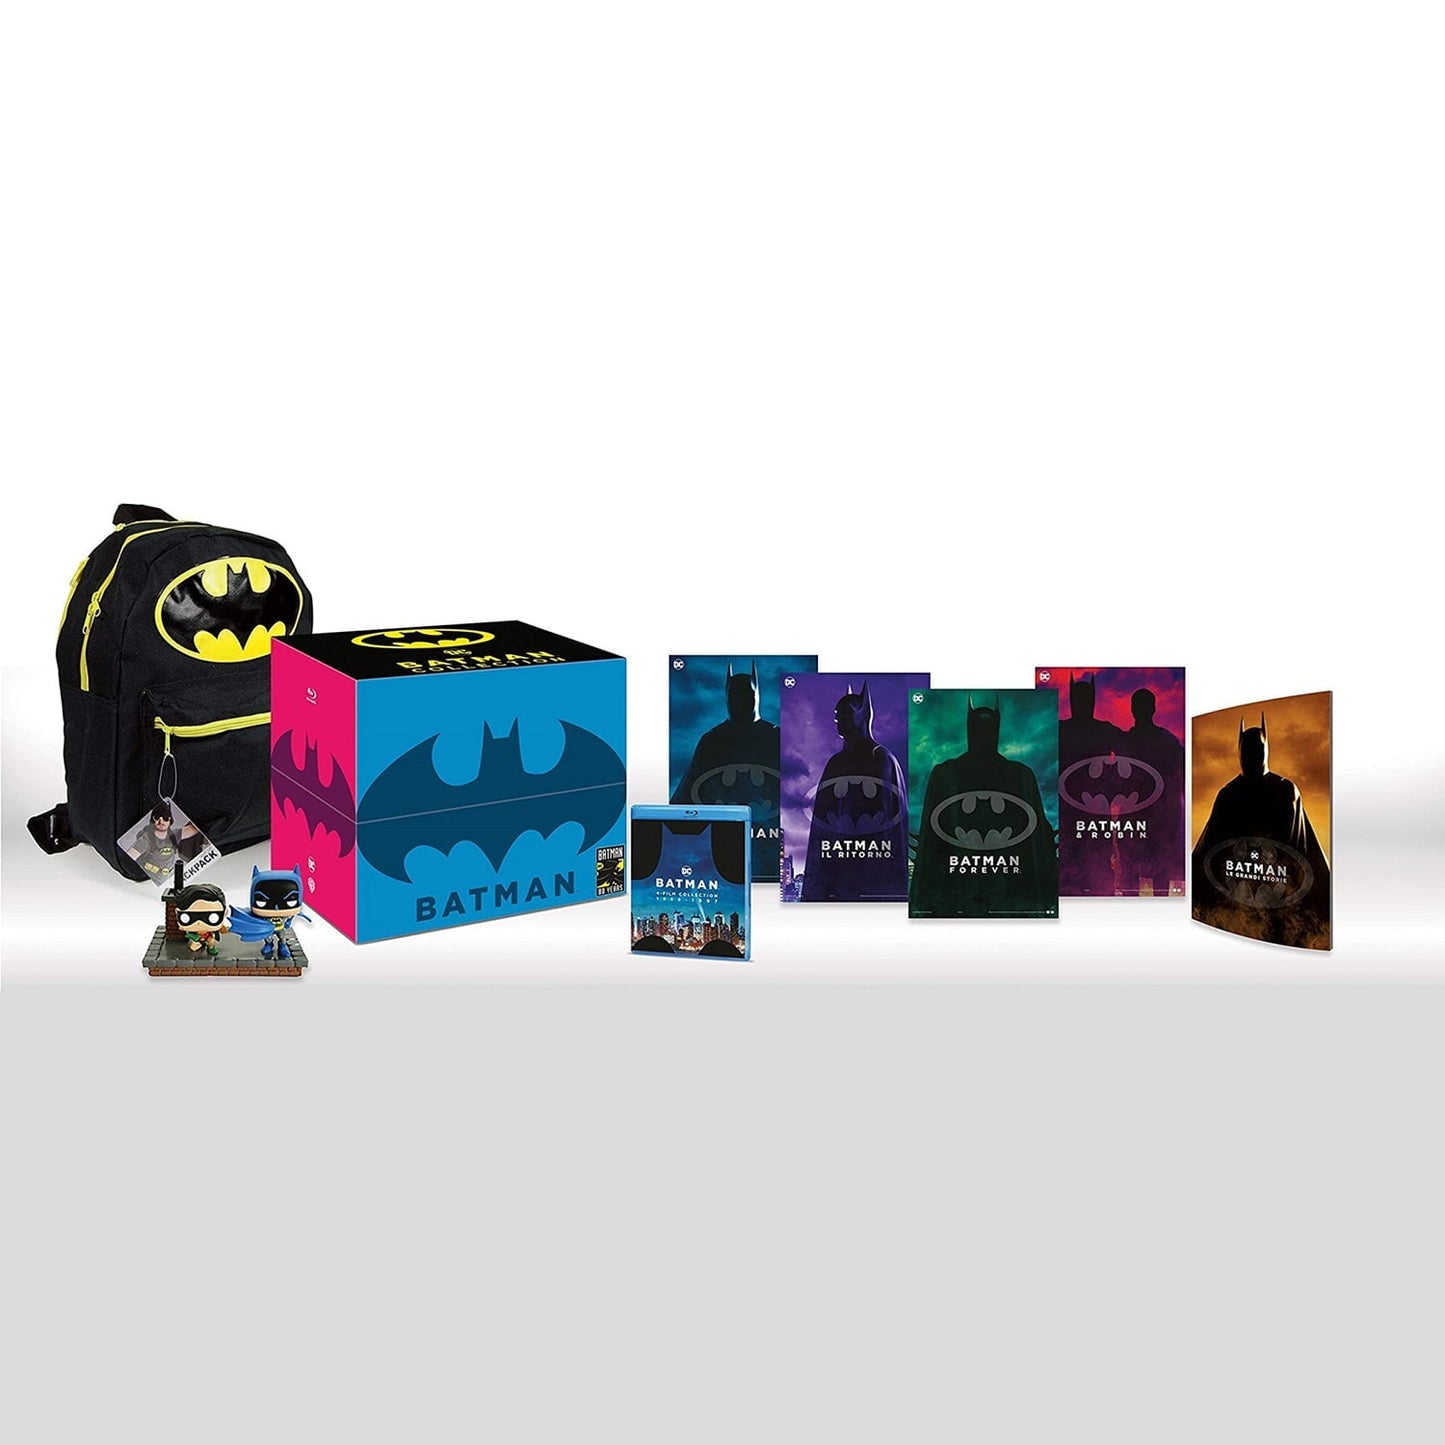 Бэтмен: Коллекция (1989-1997) (4 Blu-ray + Backpack + 2 Funko Pop) Limited Edition